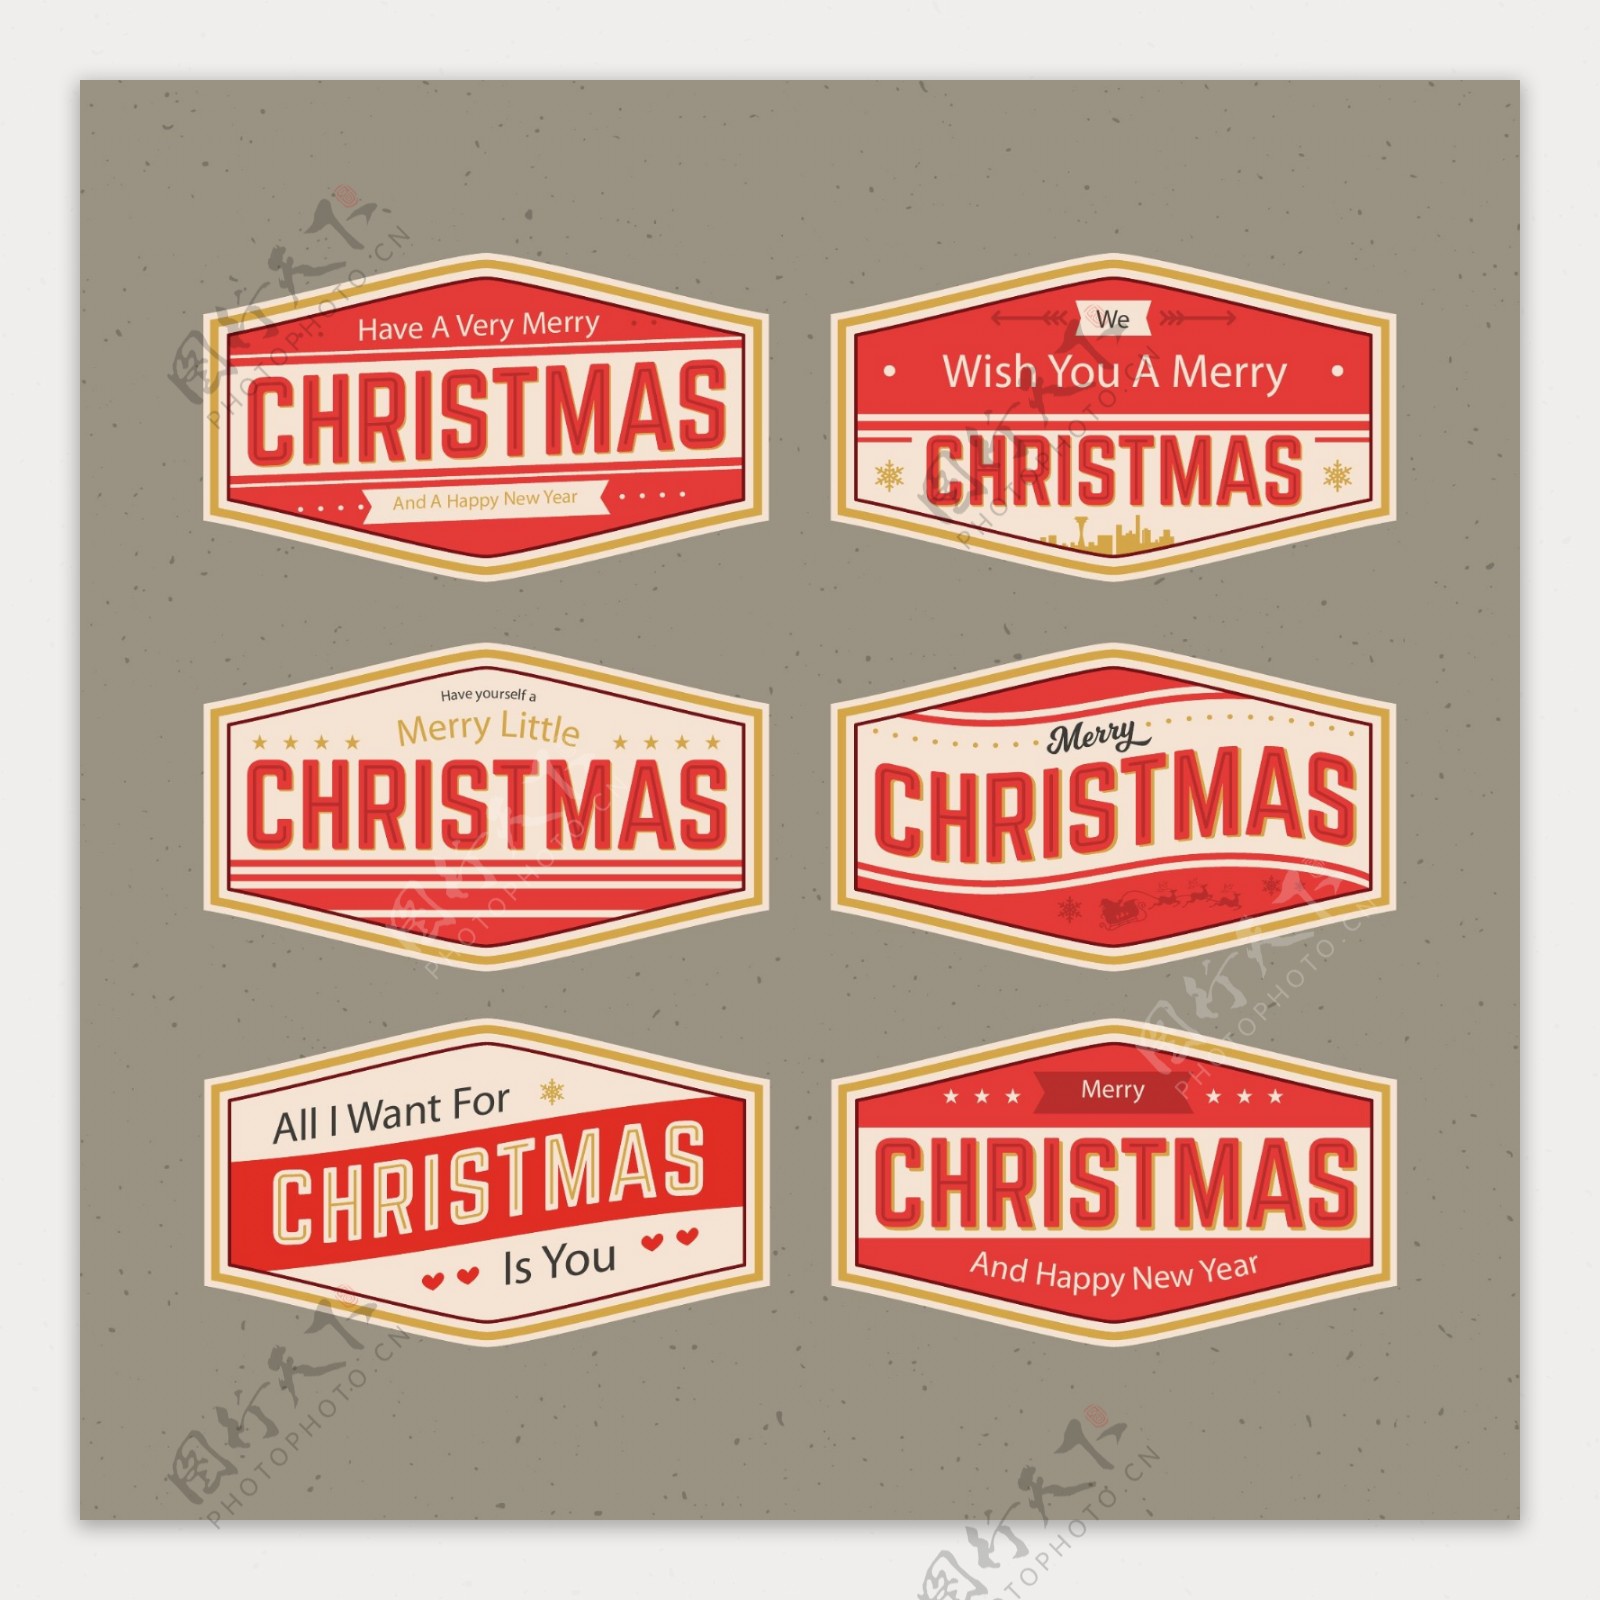 啤酒商标样式的圣诞标签